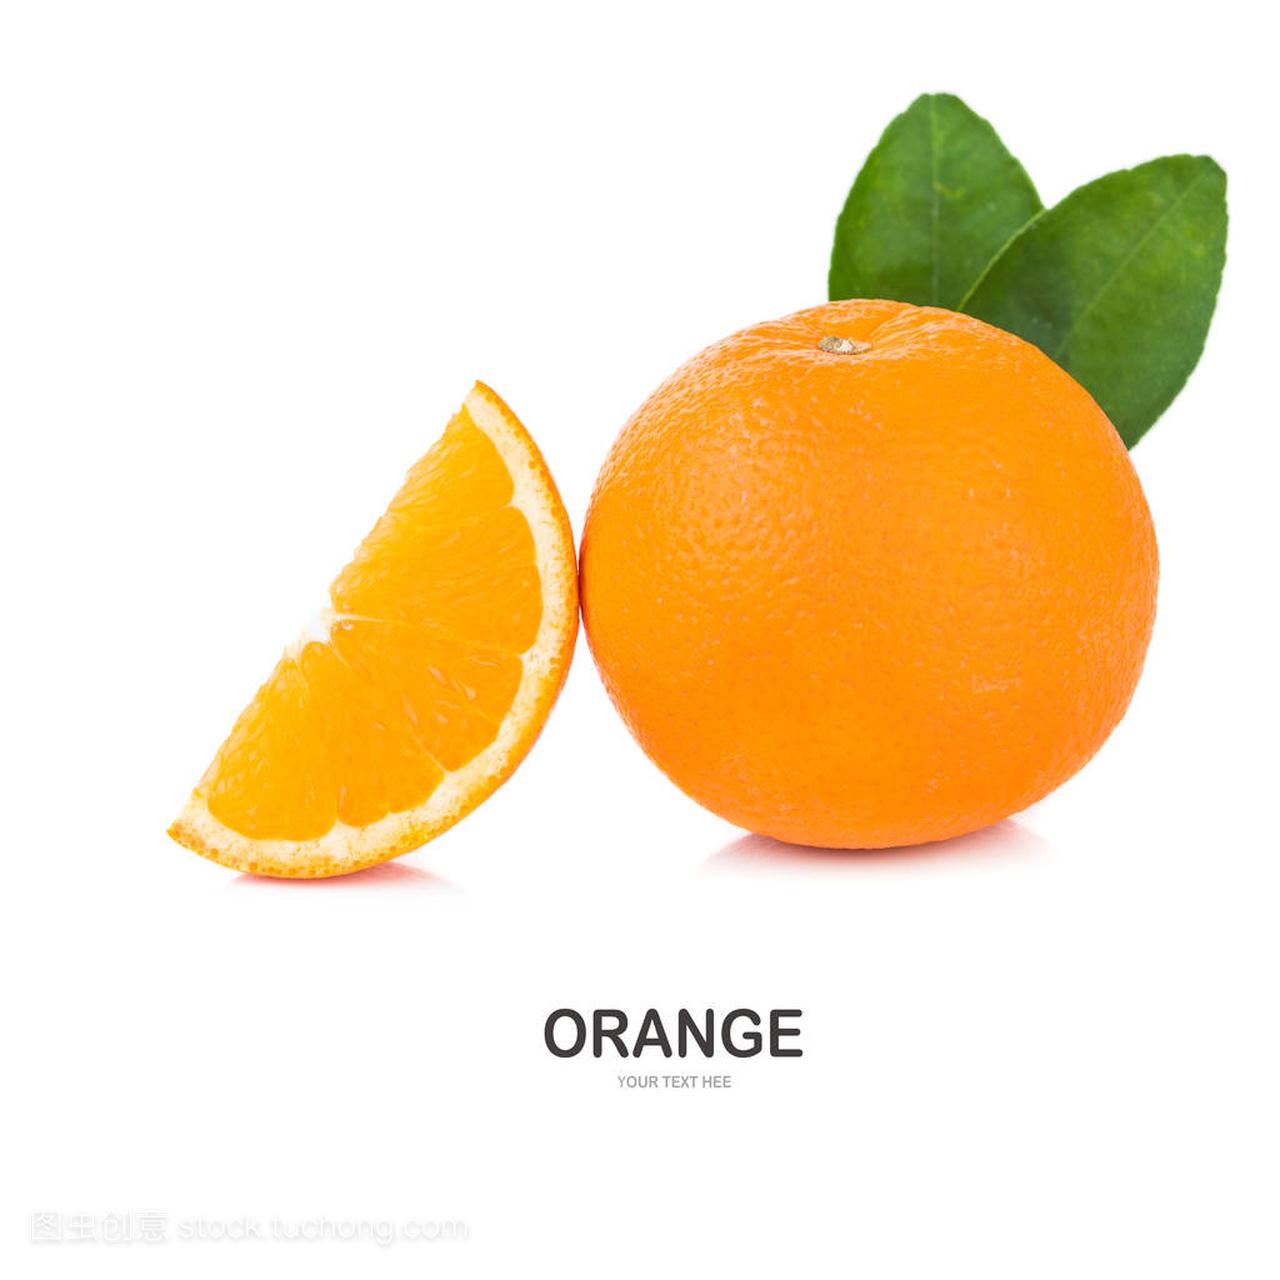 Orange fruit with orange leaves isolate on white